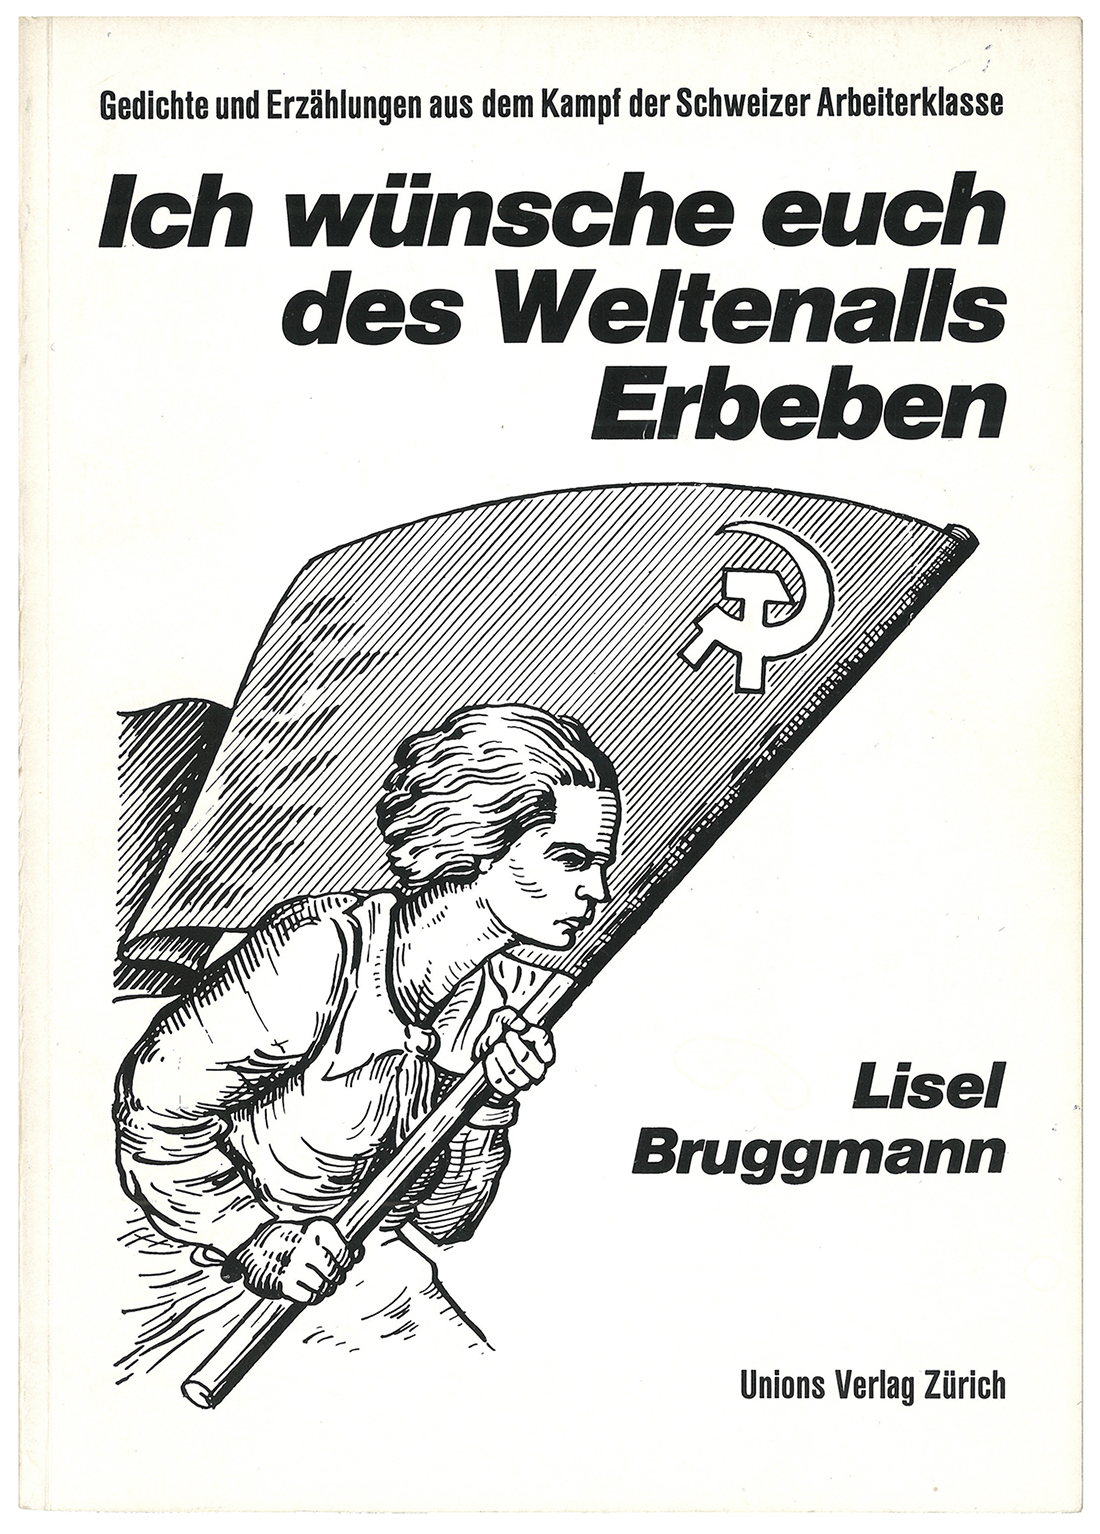 Das erste Buch des Unionsverlags: In «Ich wünsche euch des Weltenalls Erbeben» erzählt Lisel Bruggmann, führend in der kommunistischen Frauenbewegung, vom Kampf der Arbeiterklasse. (Bild: ZB Zürich) 